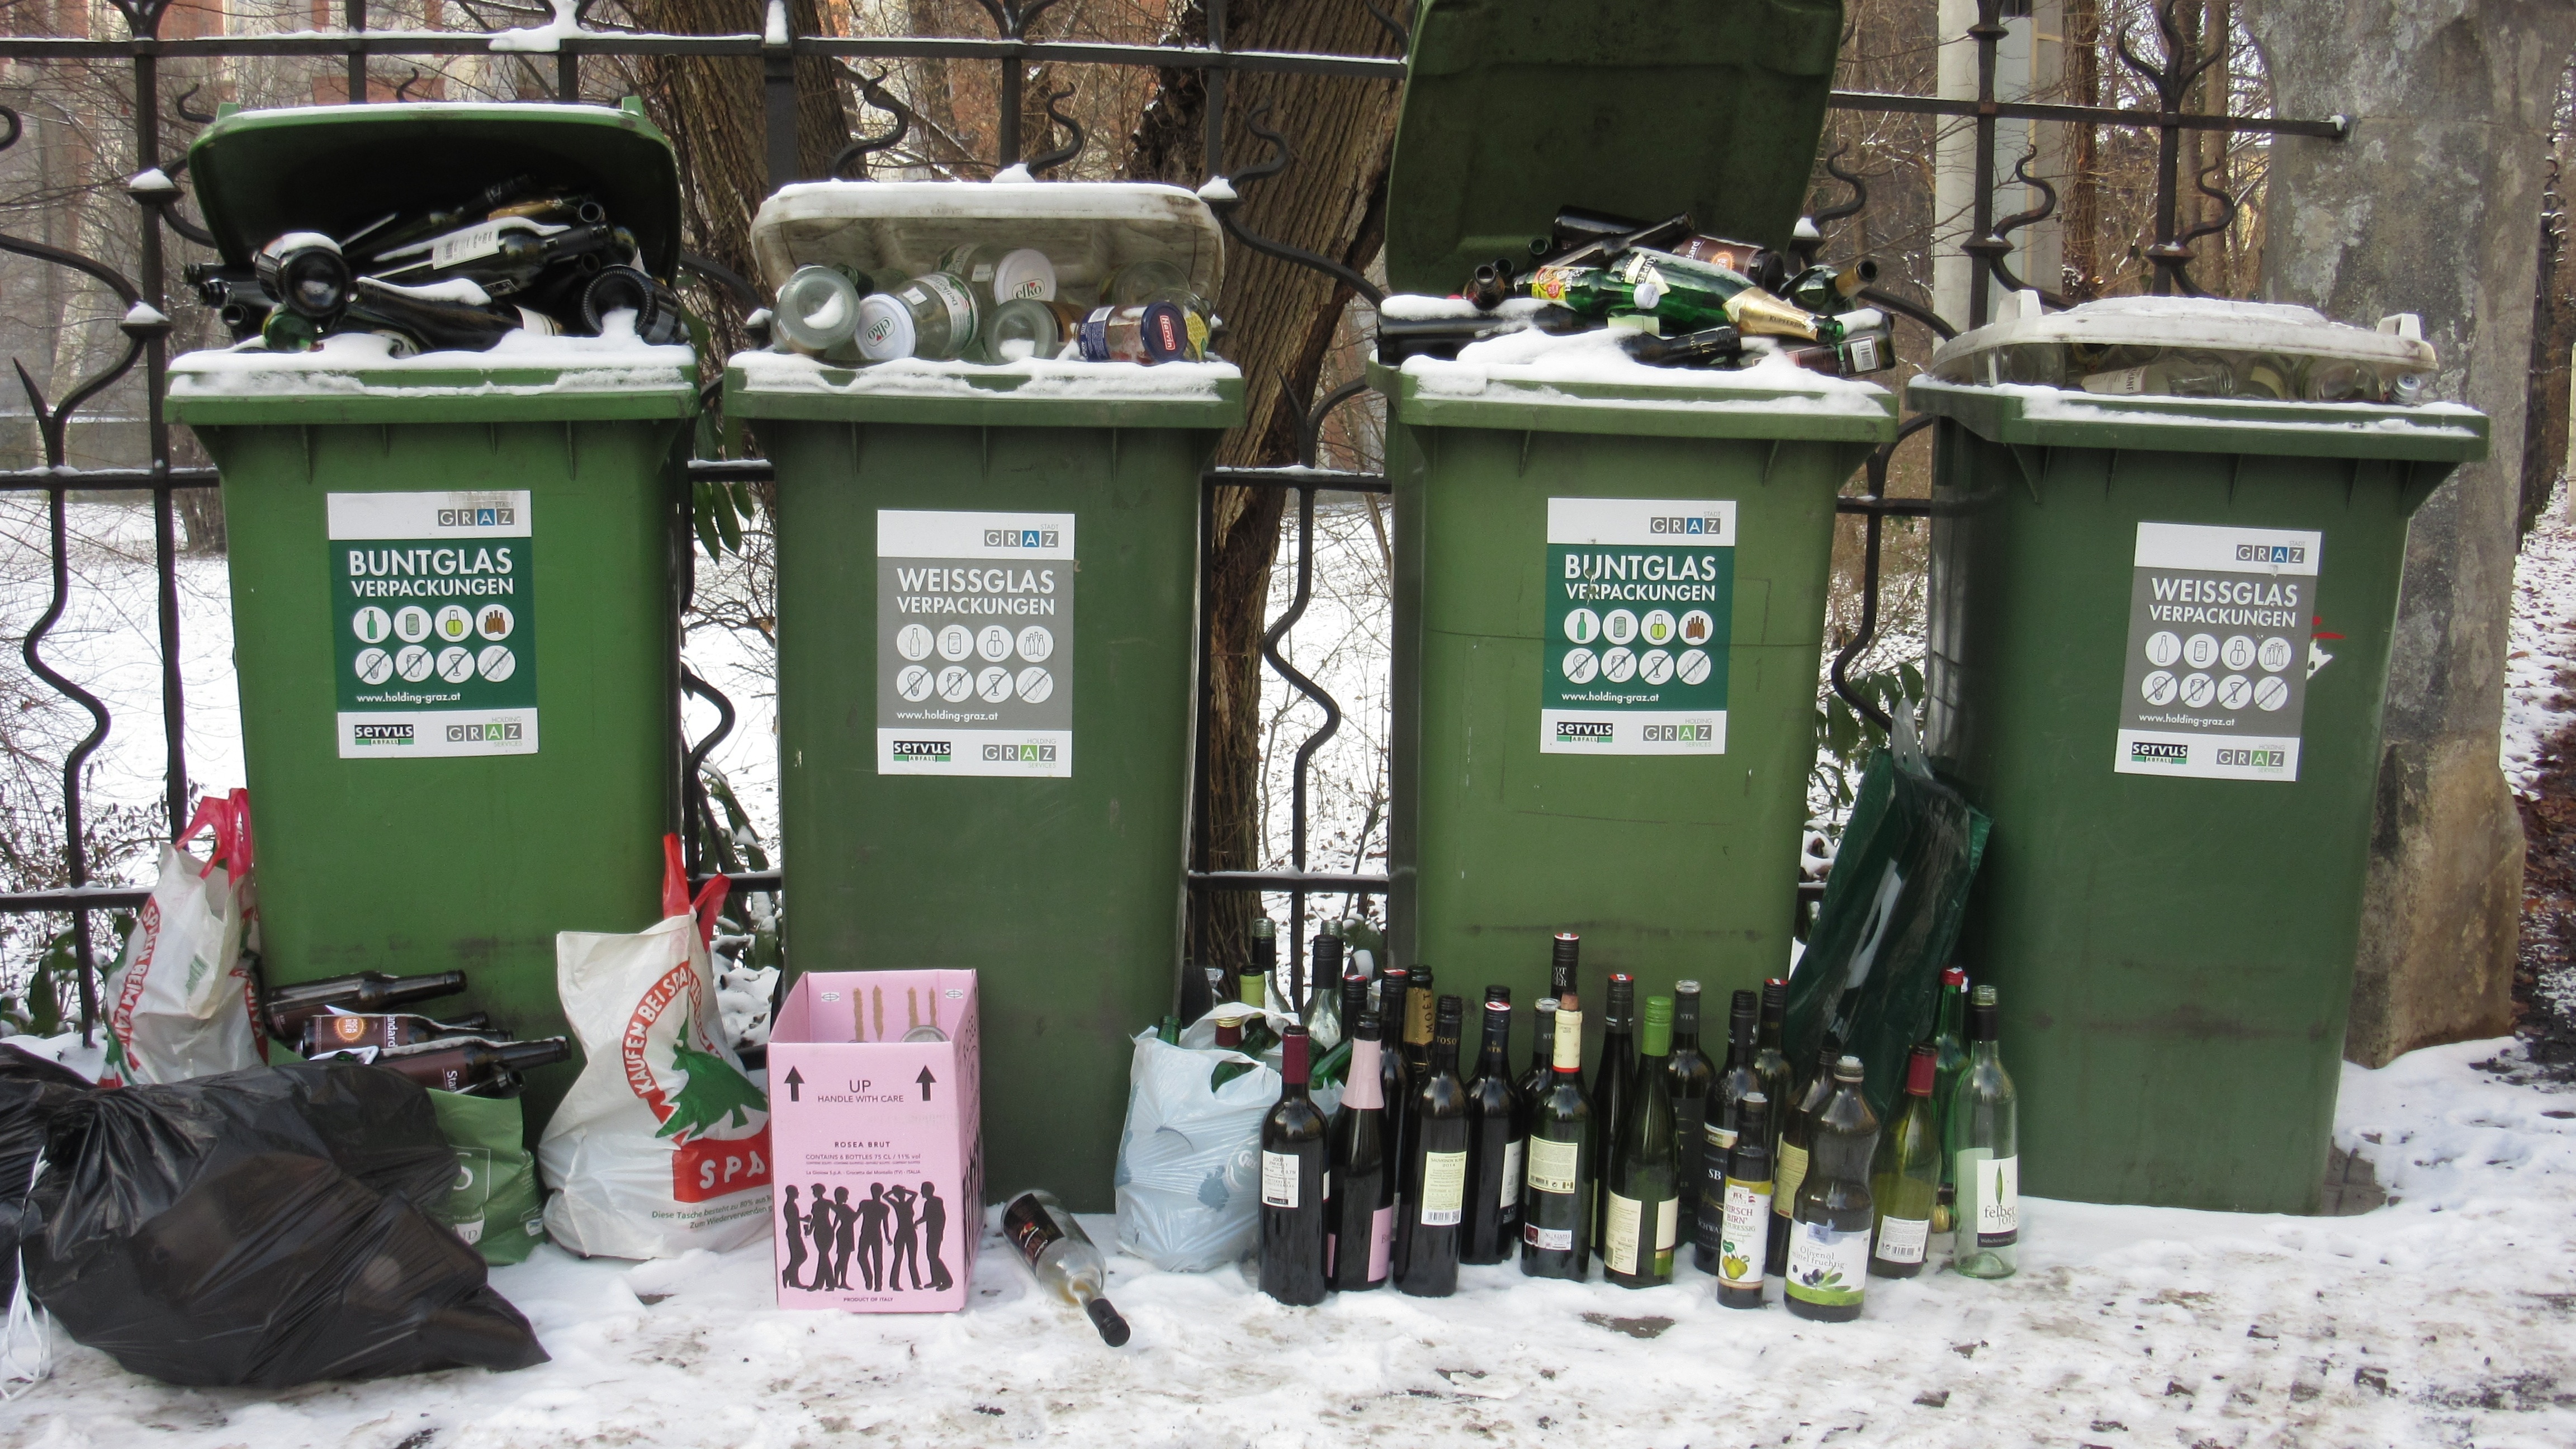 4 green plastic trash bin with bottle